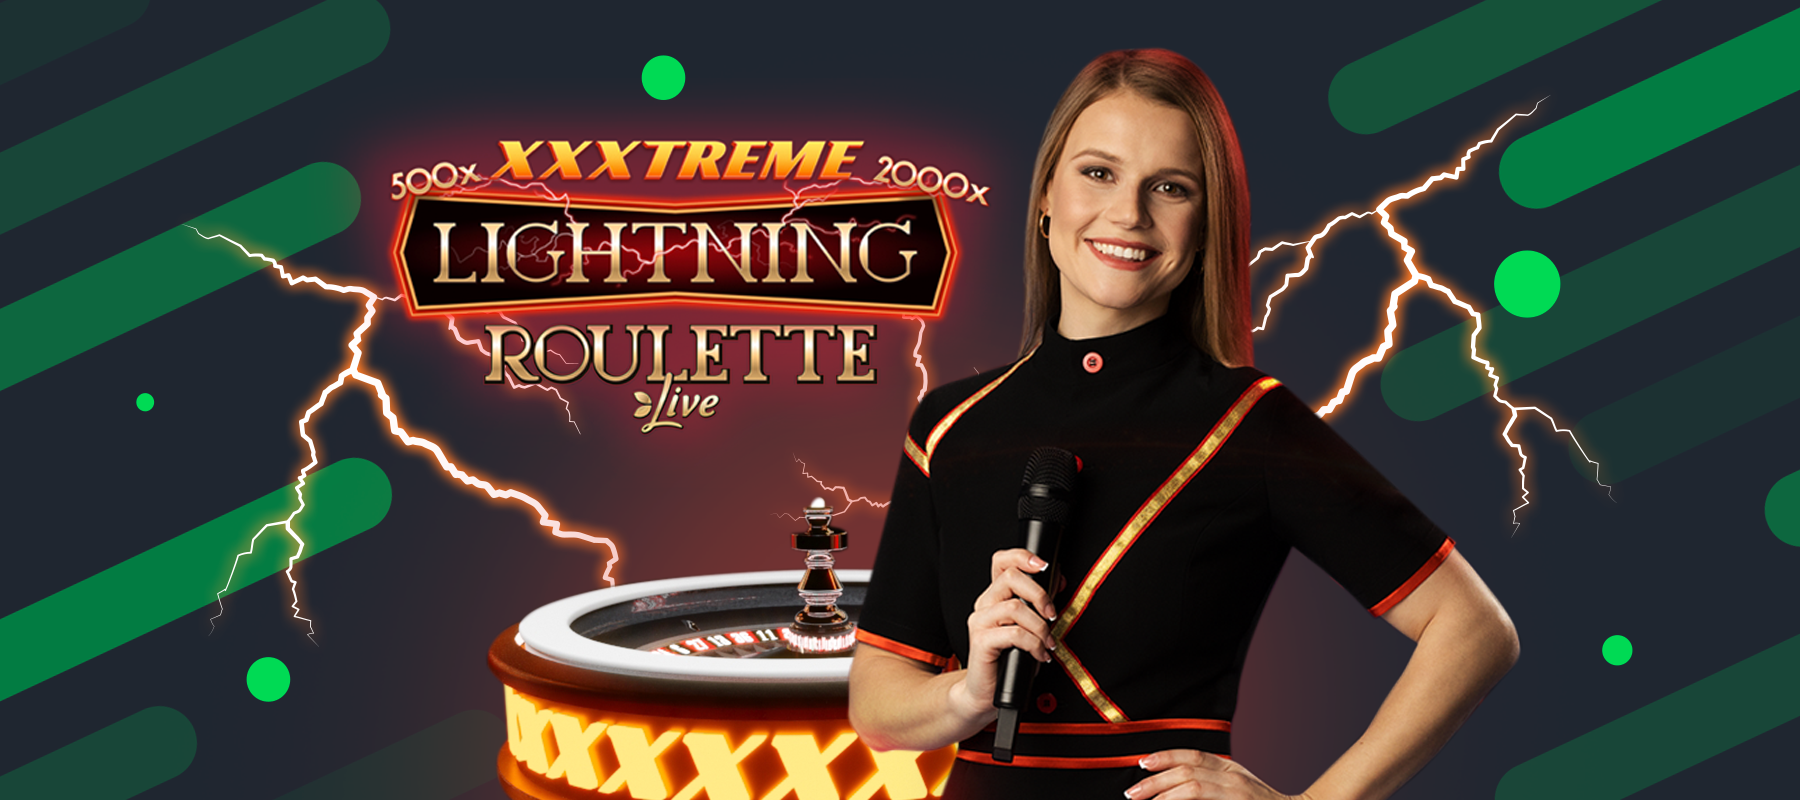 XXXtreme Lightning Roulette von Evolution ist live auf Sportsbet⚡